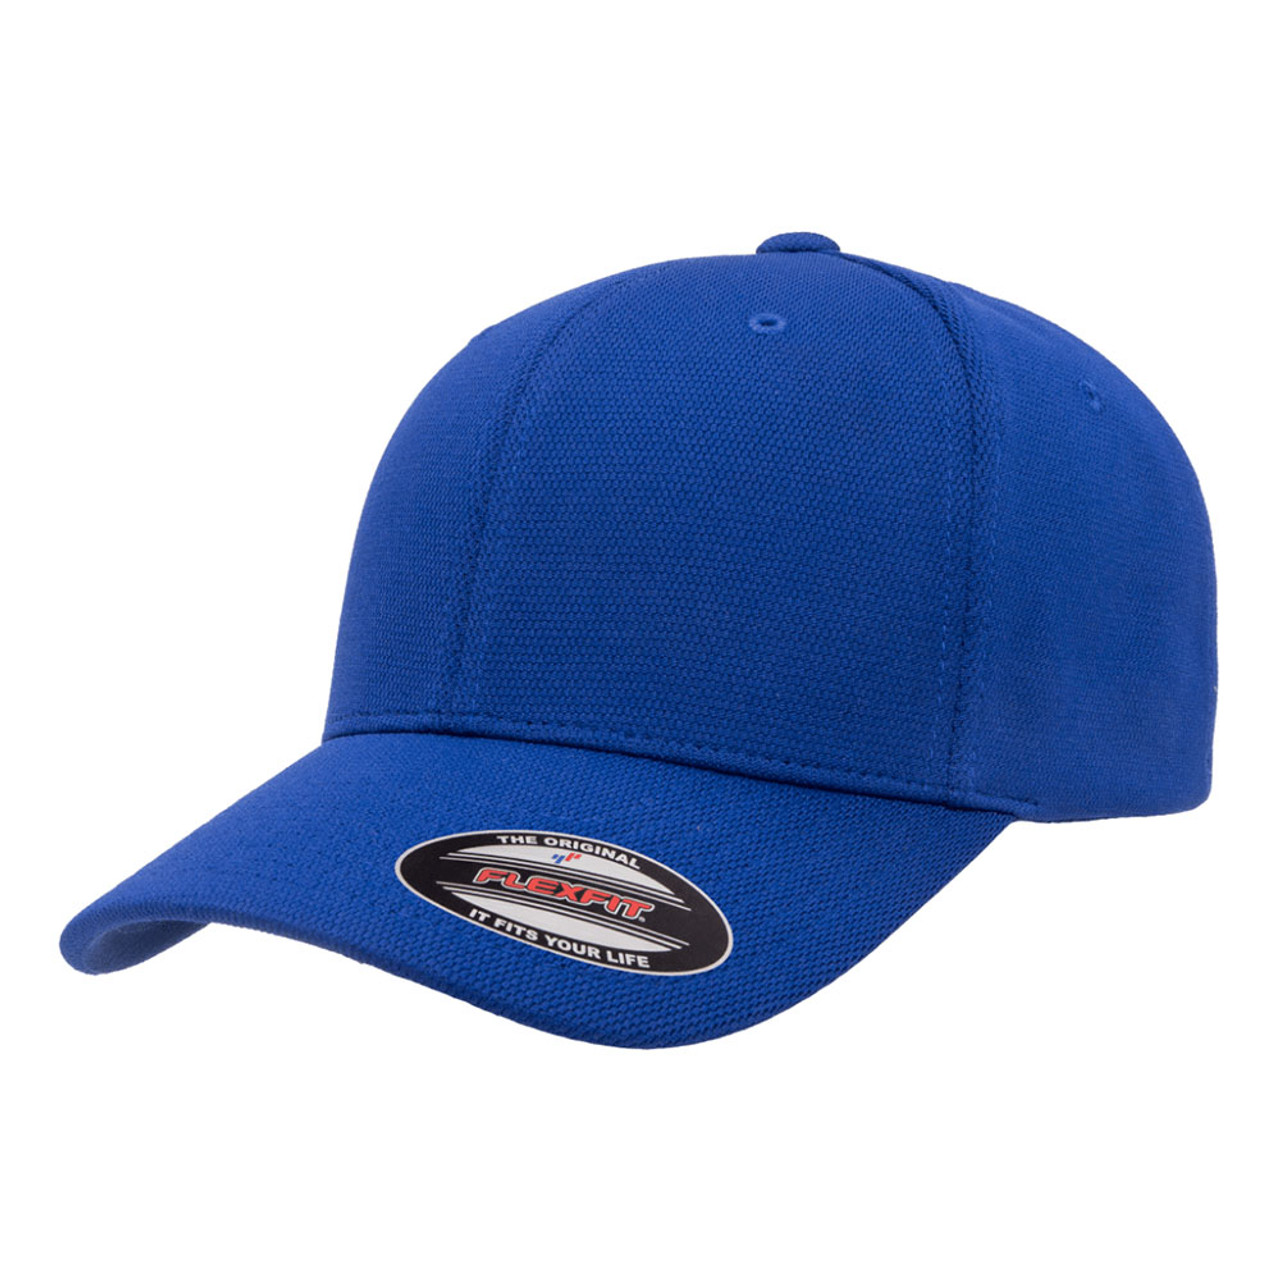 Dry Dozen Flexfit | The Cap Hat Jac Cool - Performance & One